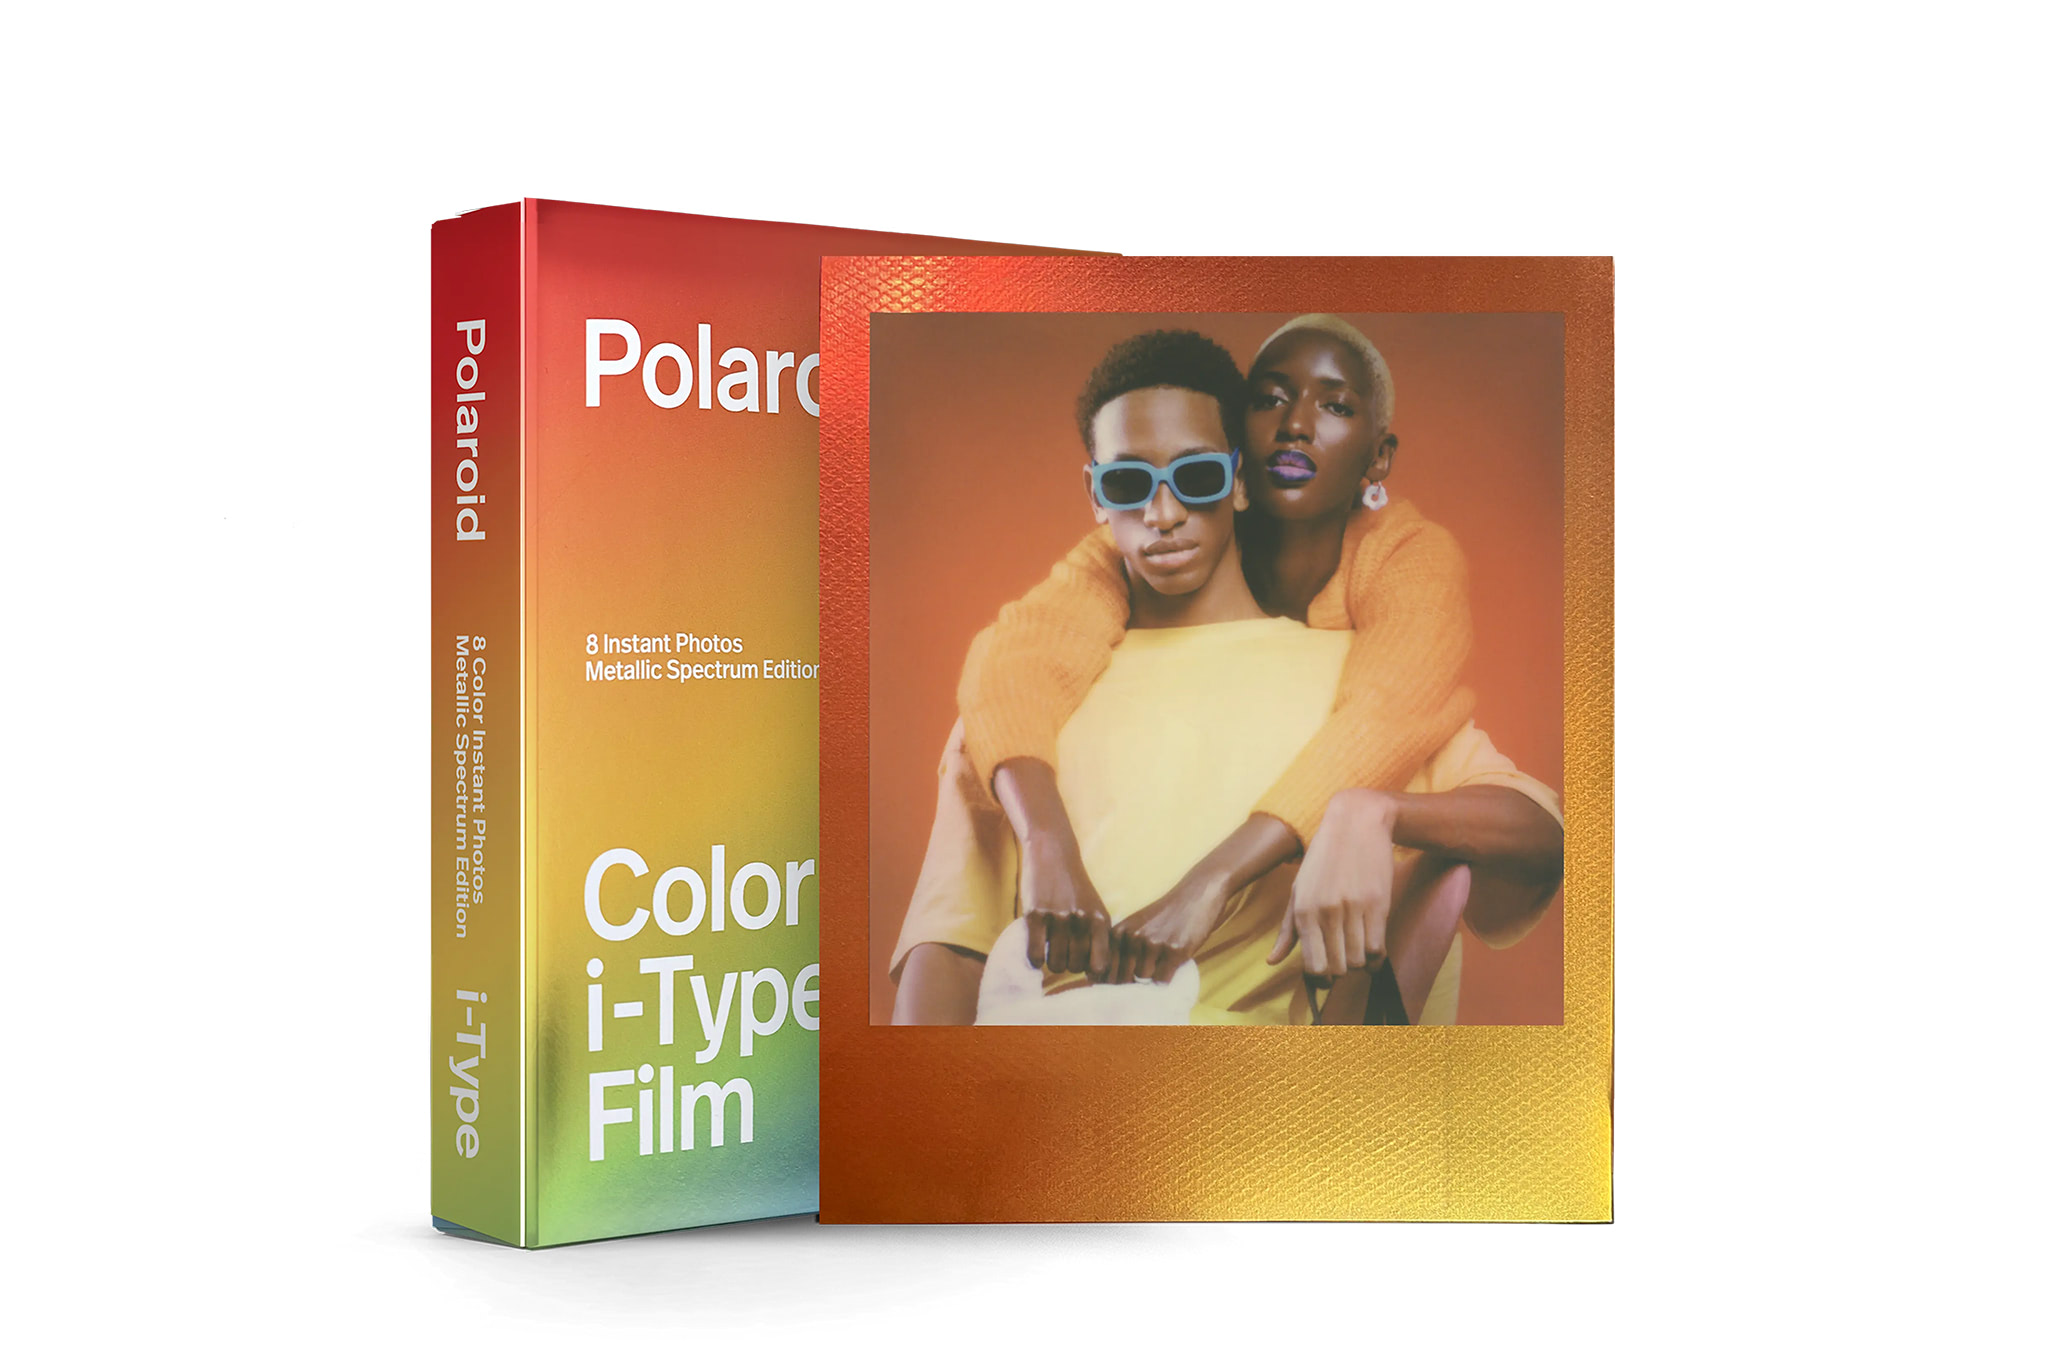 polaroid-color-itype-film-sofortbild-metallic-spectrum